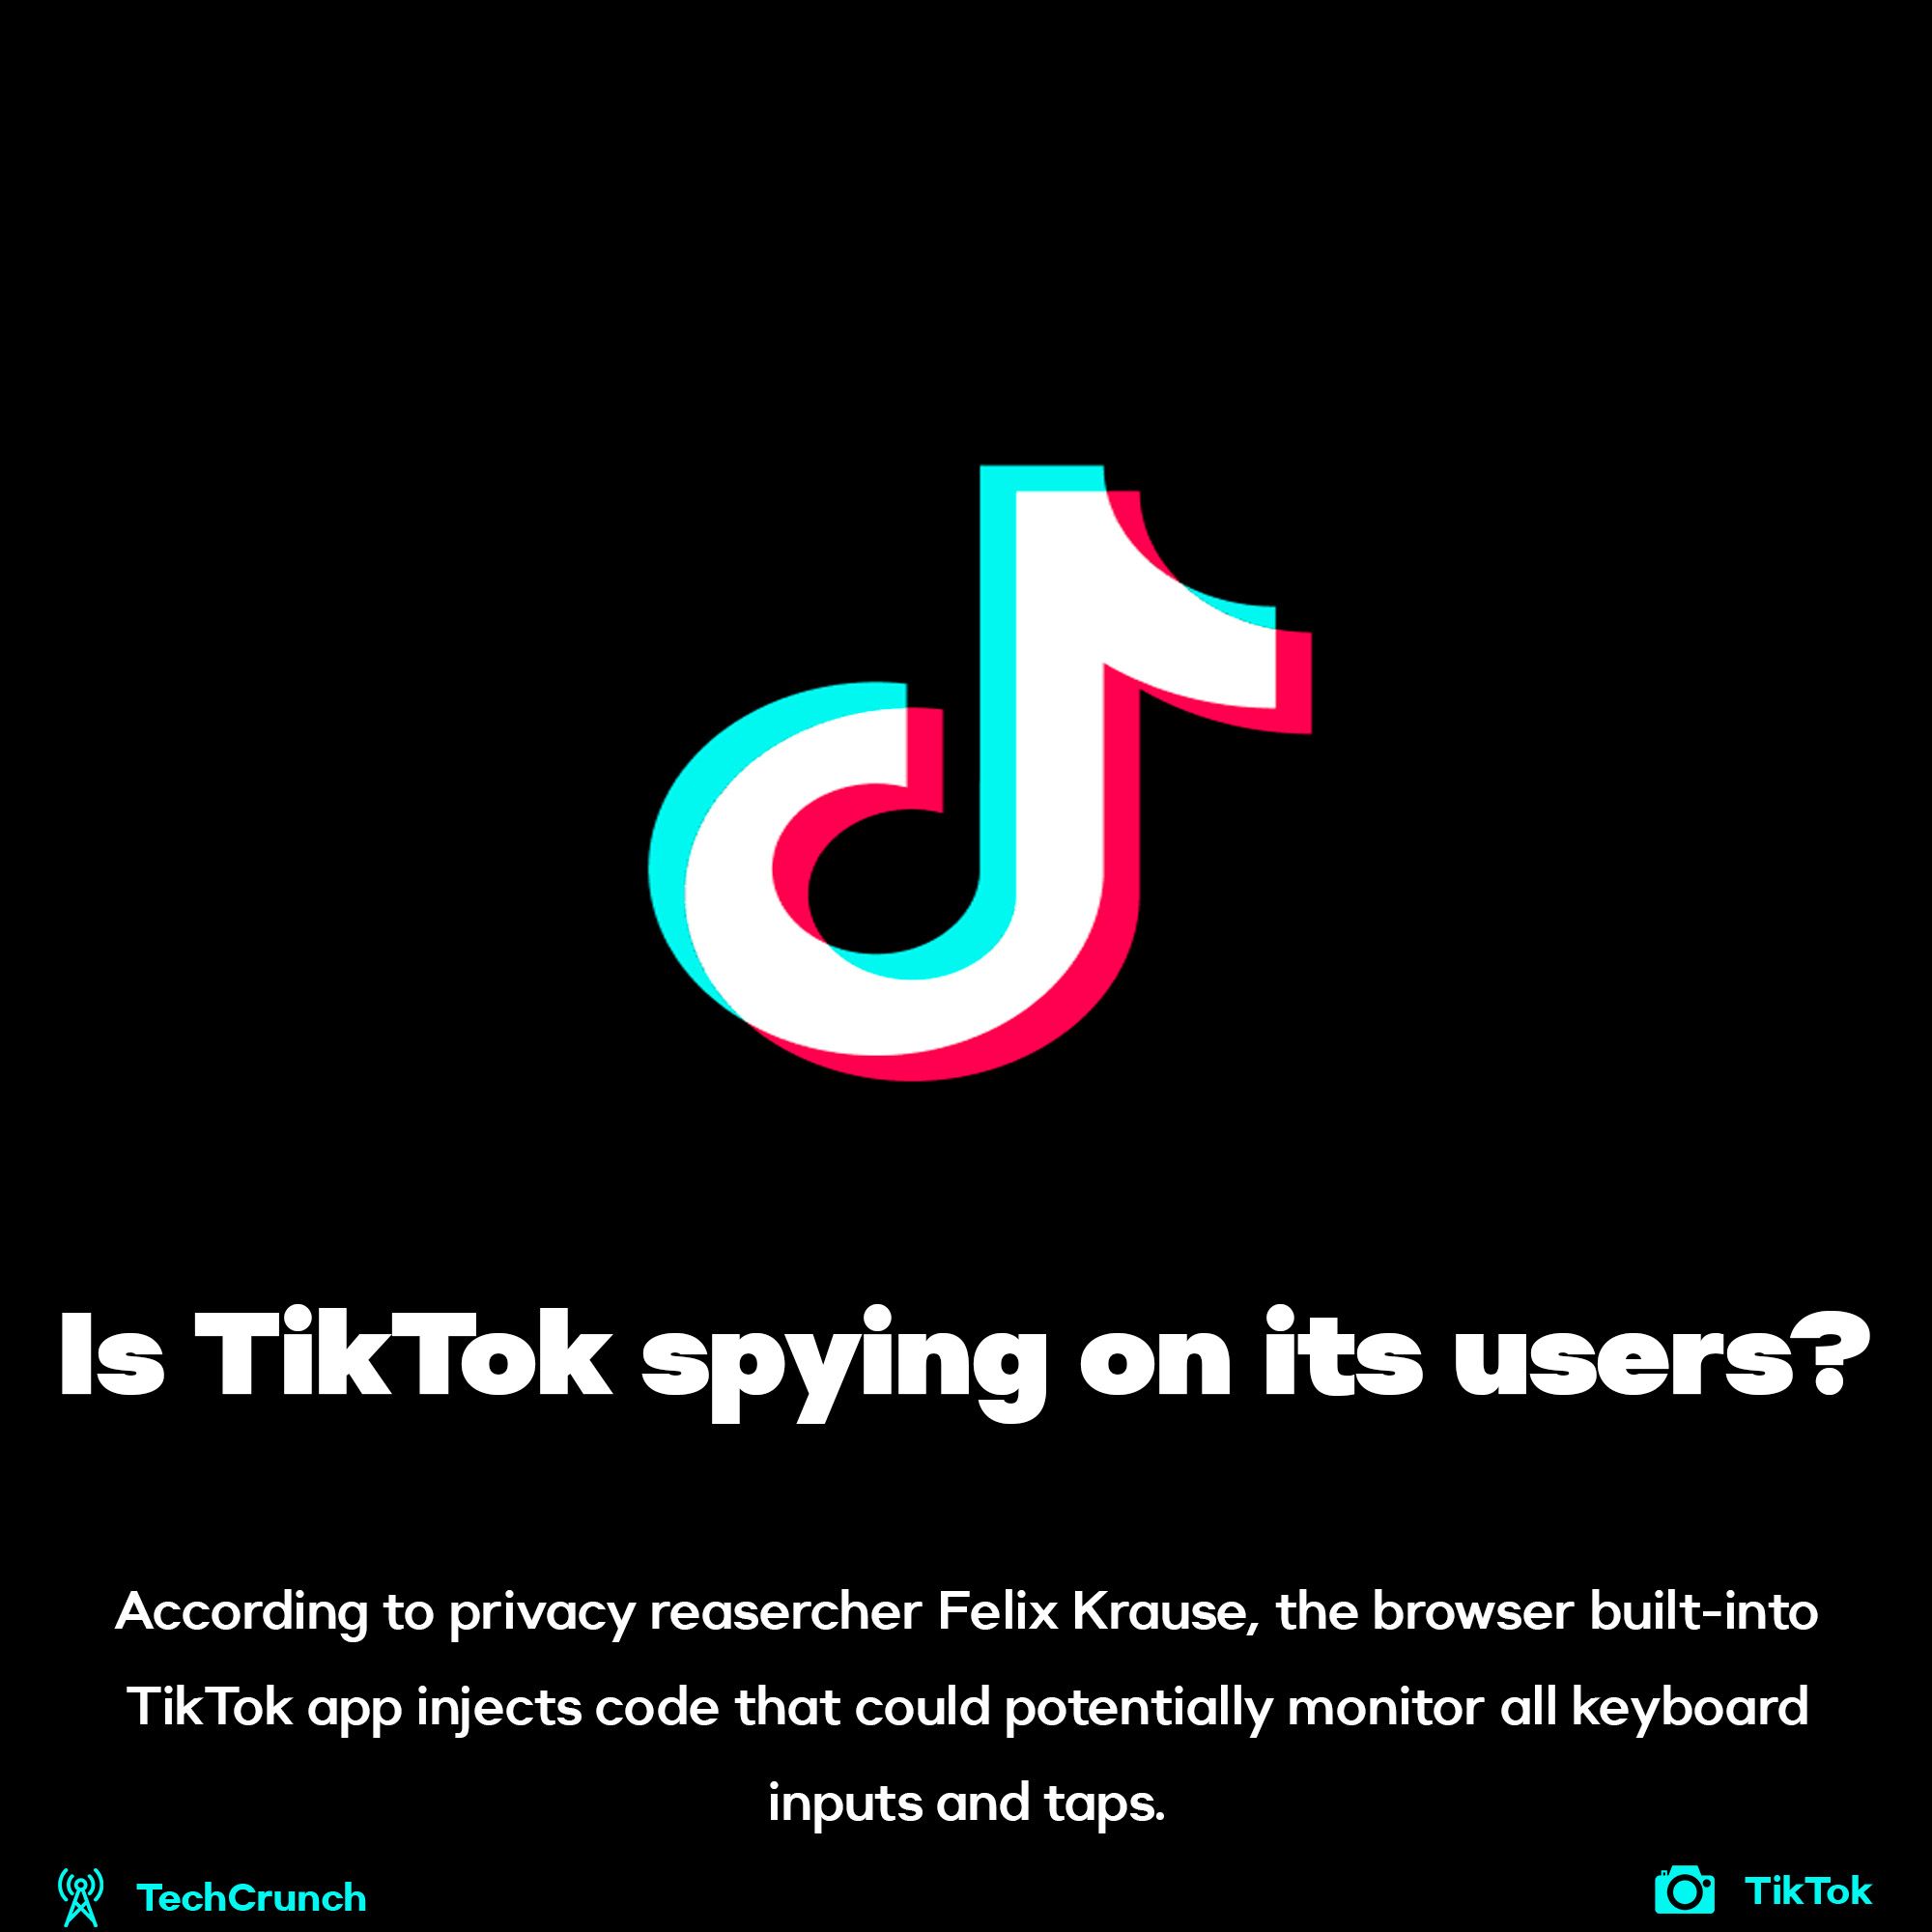 TikTok spying on users